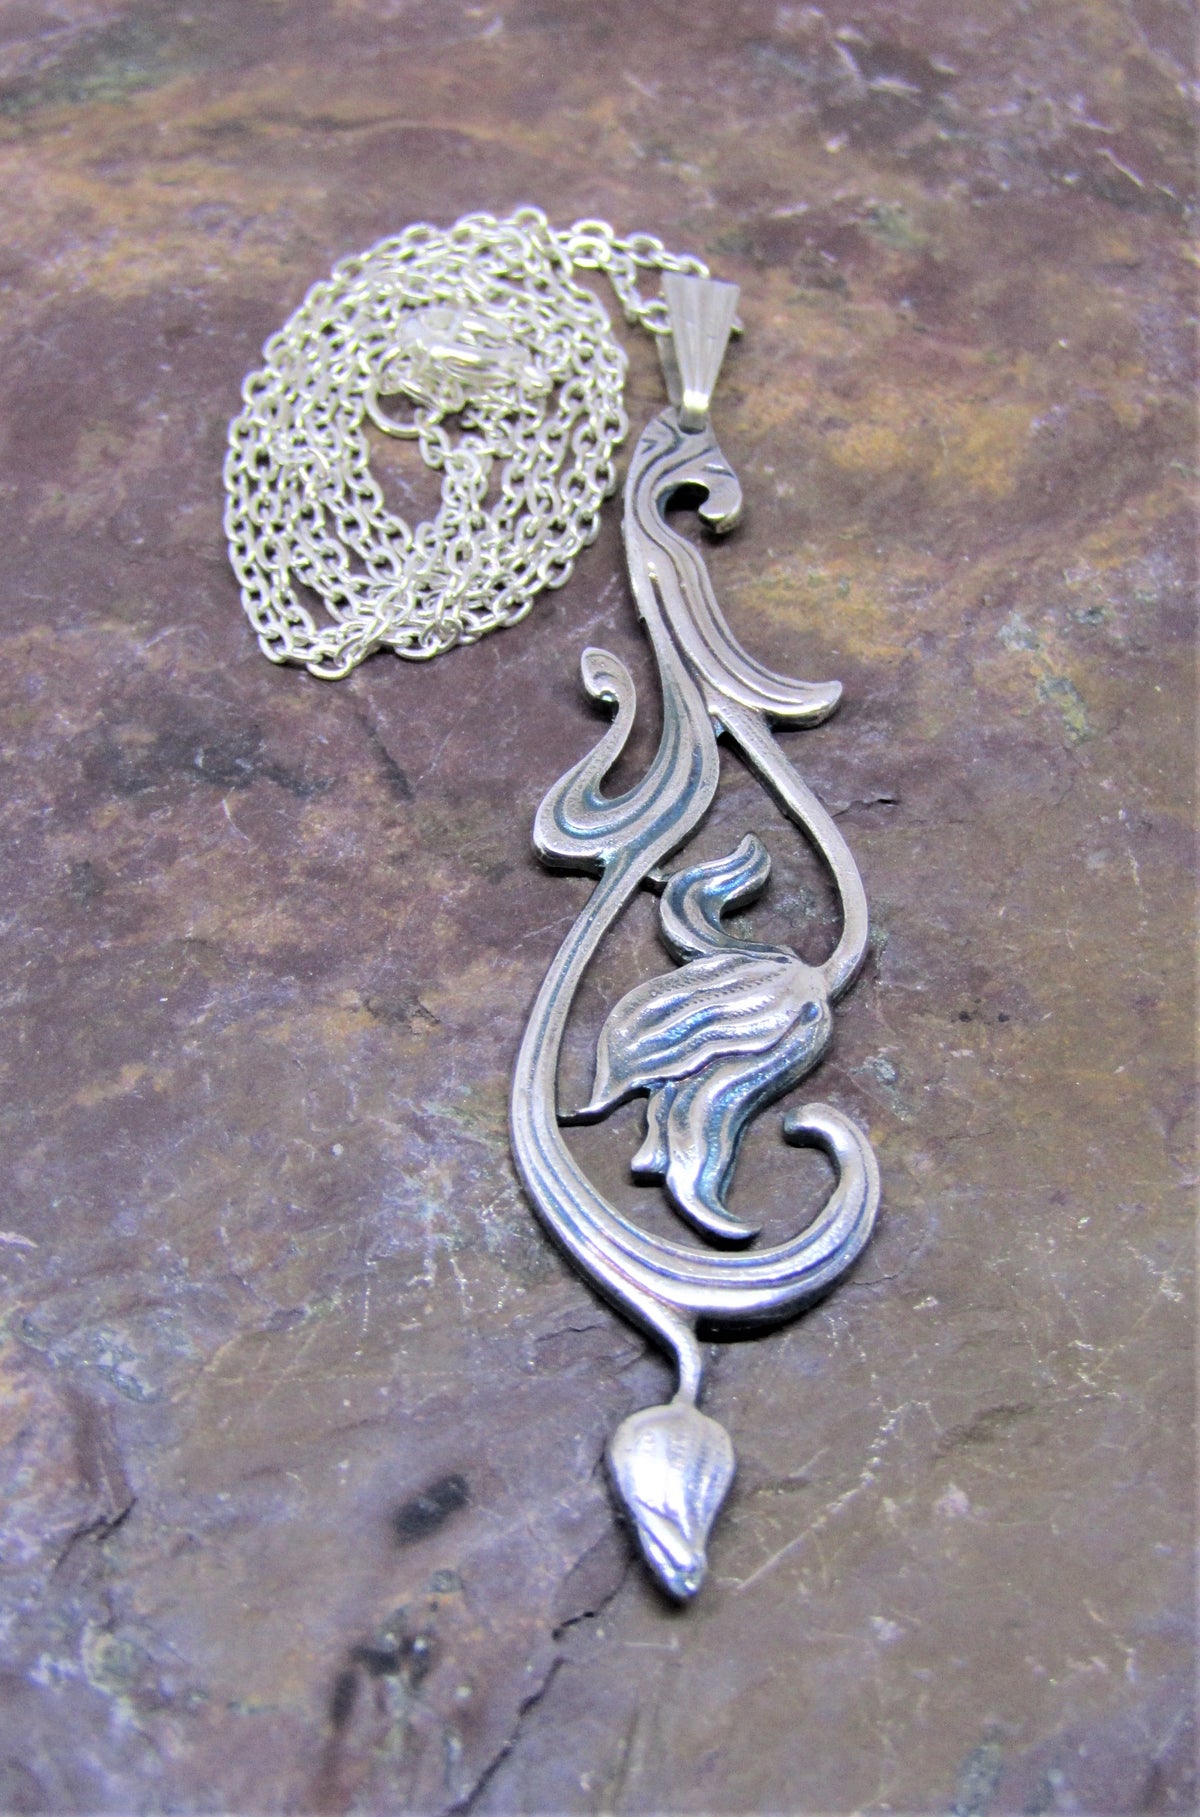 Jewellery by Jess Lelong